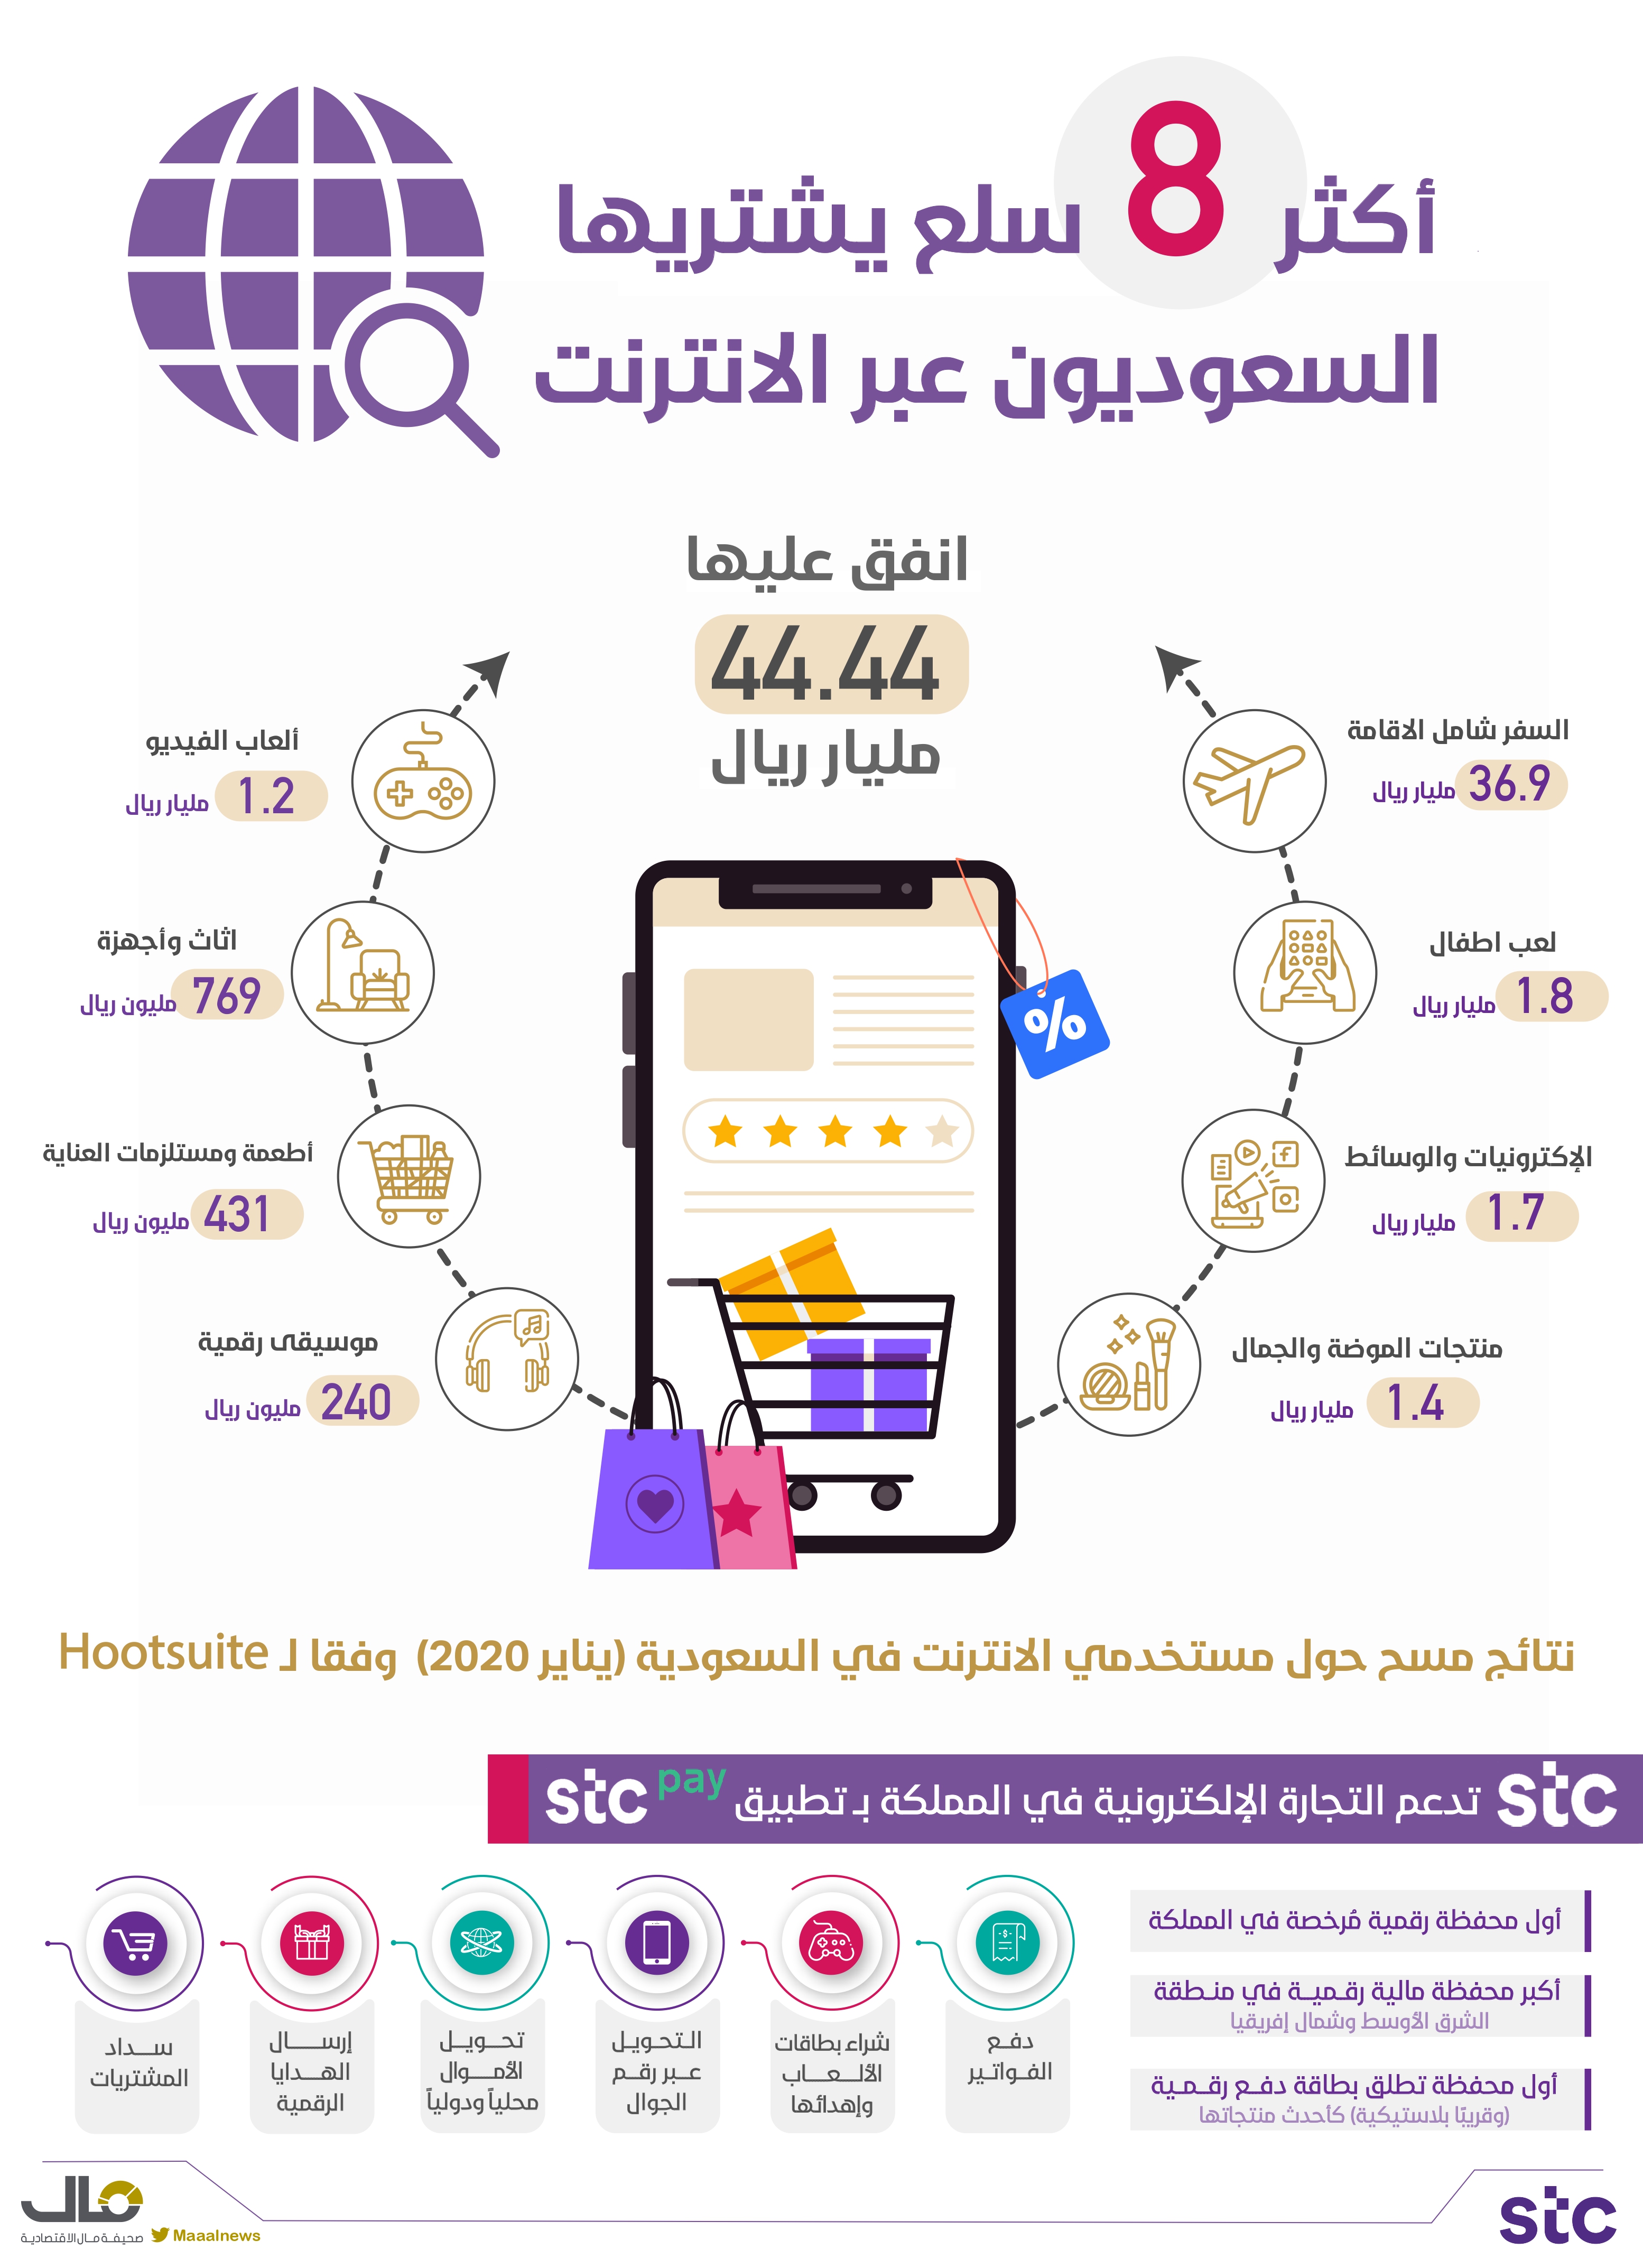 السعوديون والشراء على الانترنت